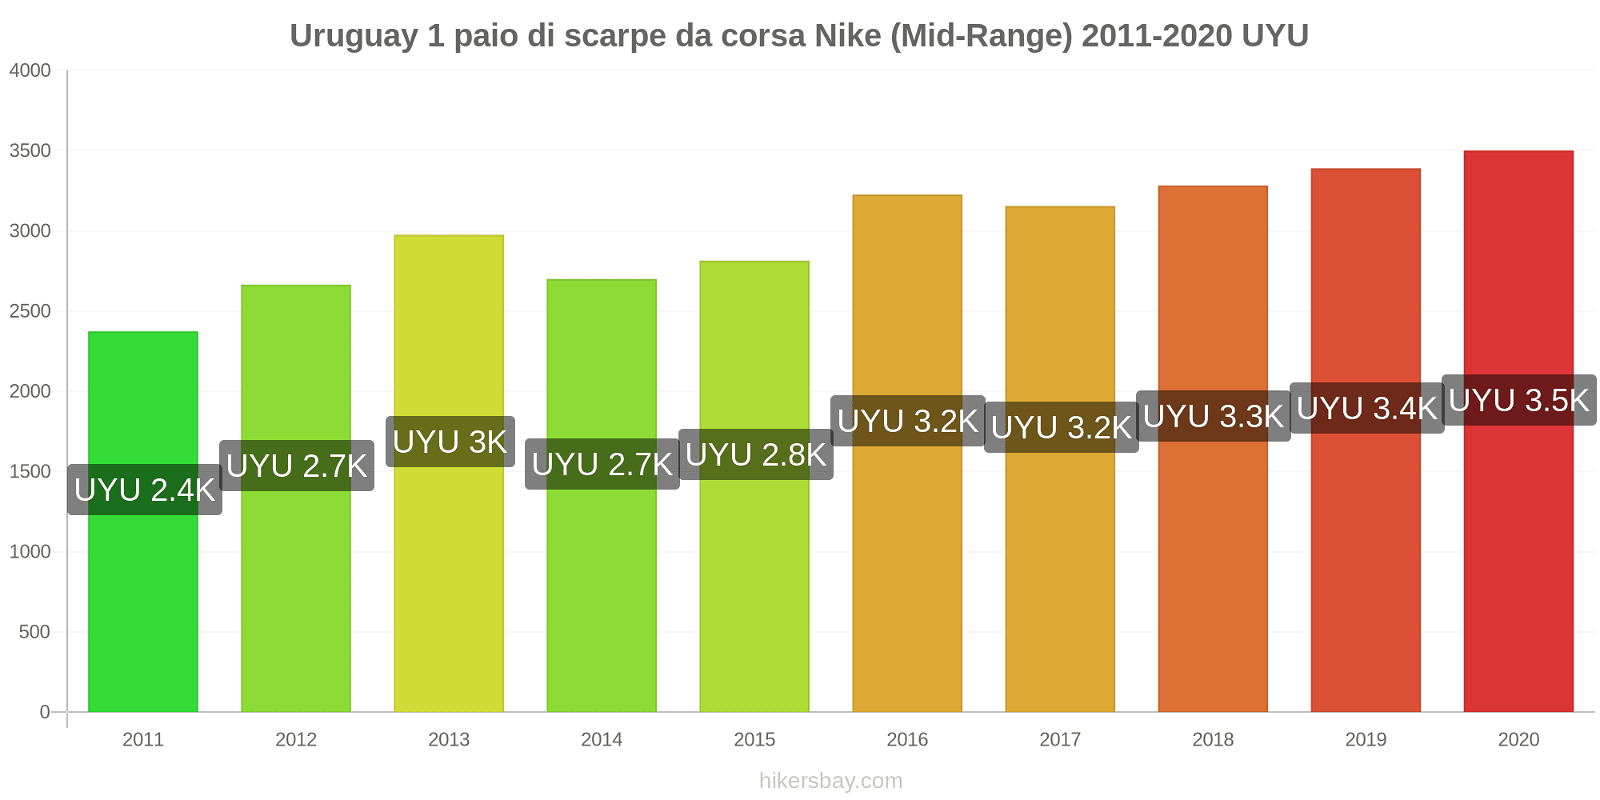 Uruguay variazioni di prezzo 1 paio di scarpe da corsa Nike (simile) hikersbay.com